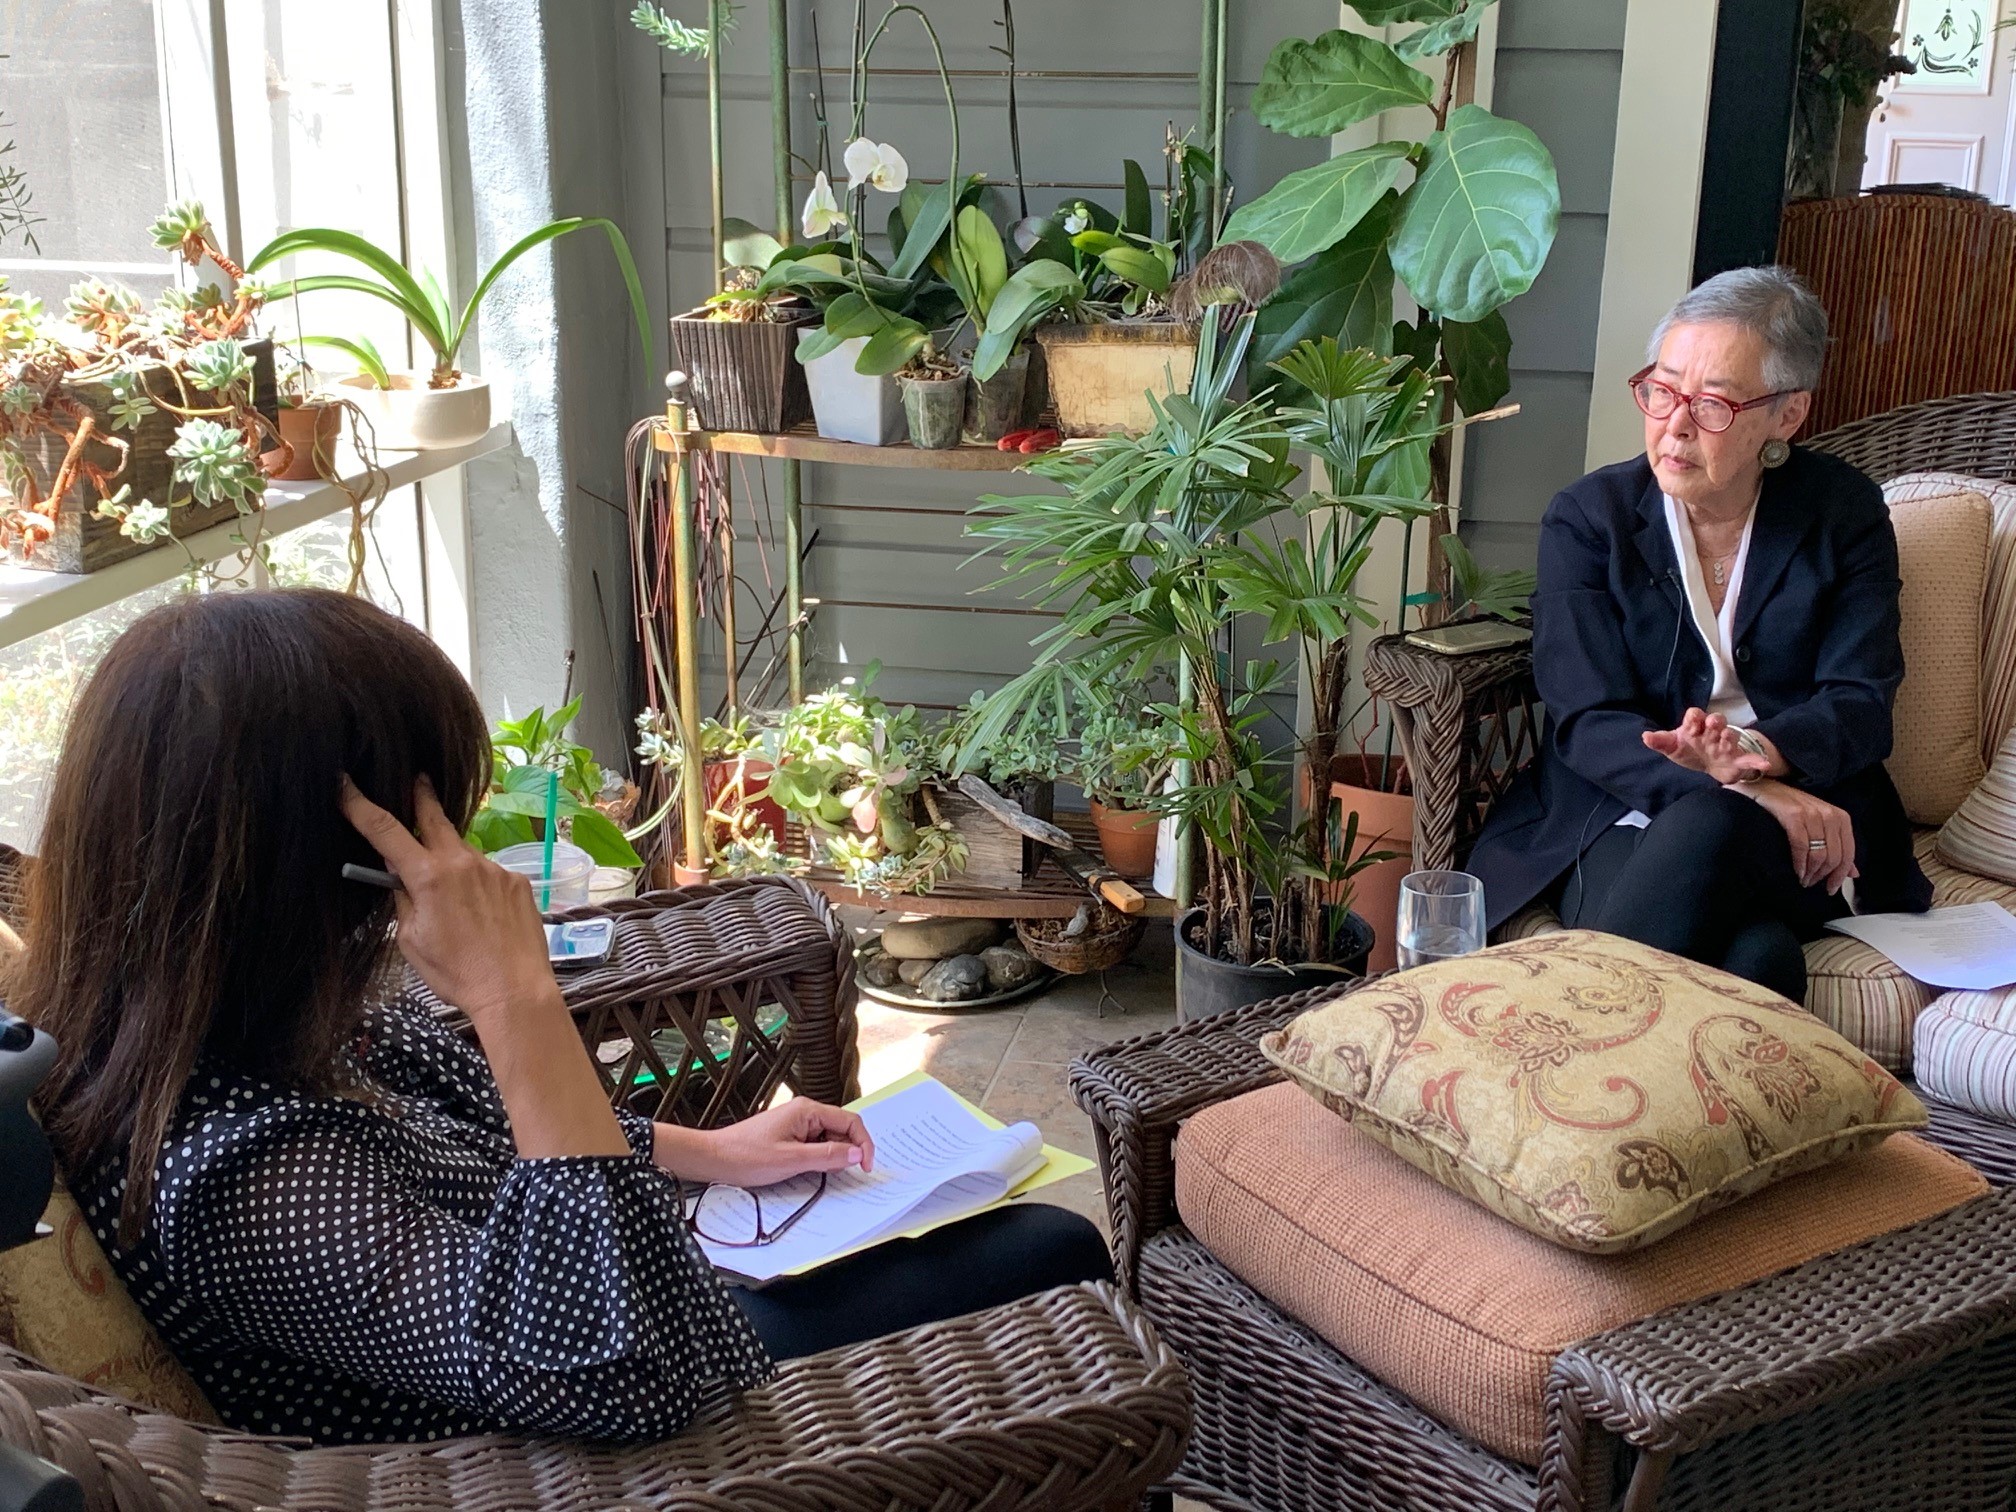 Brenda St. Hilaire interviews Carol Liu in her home